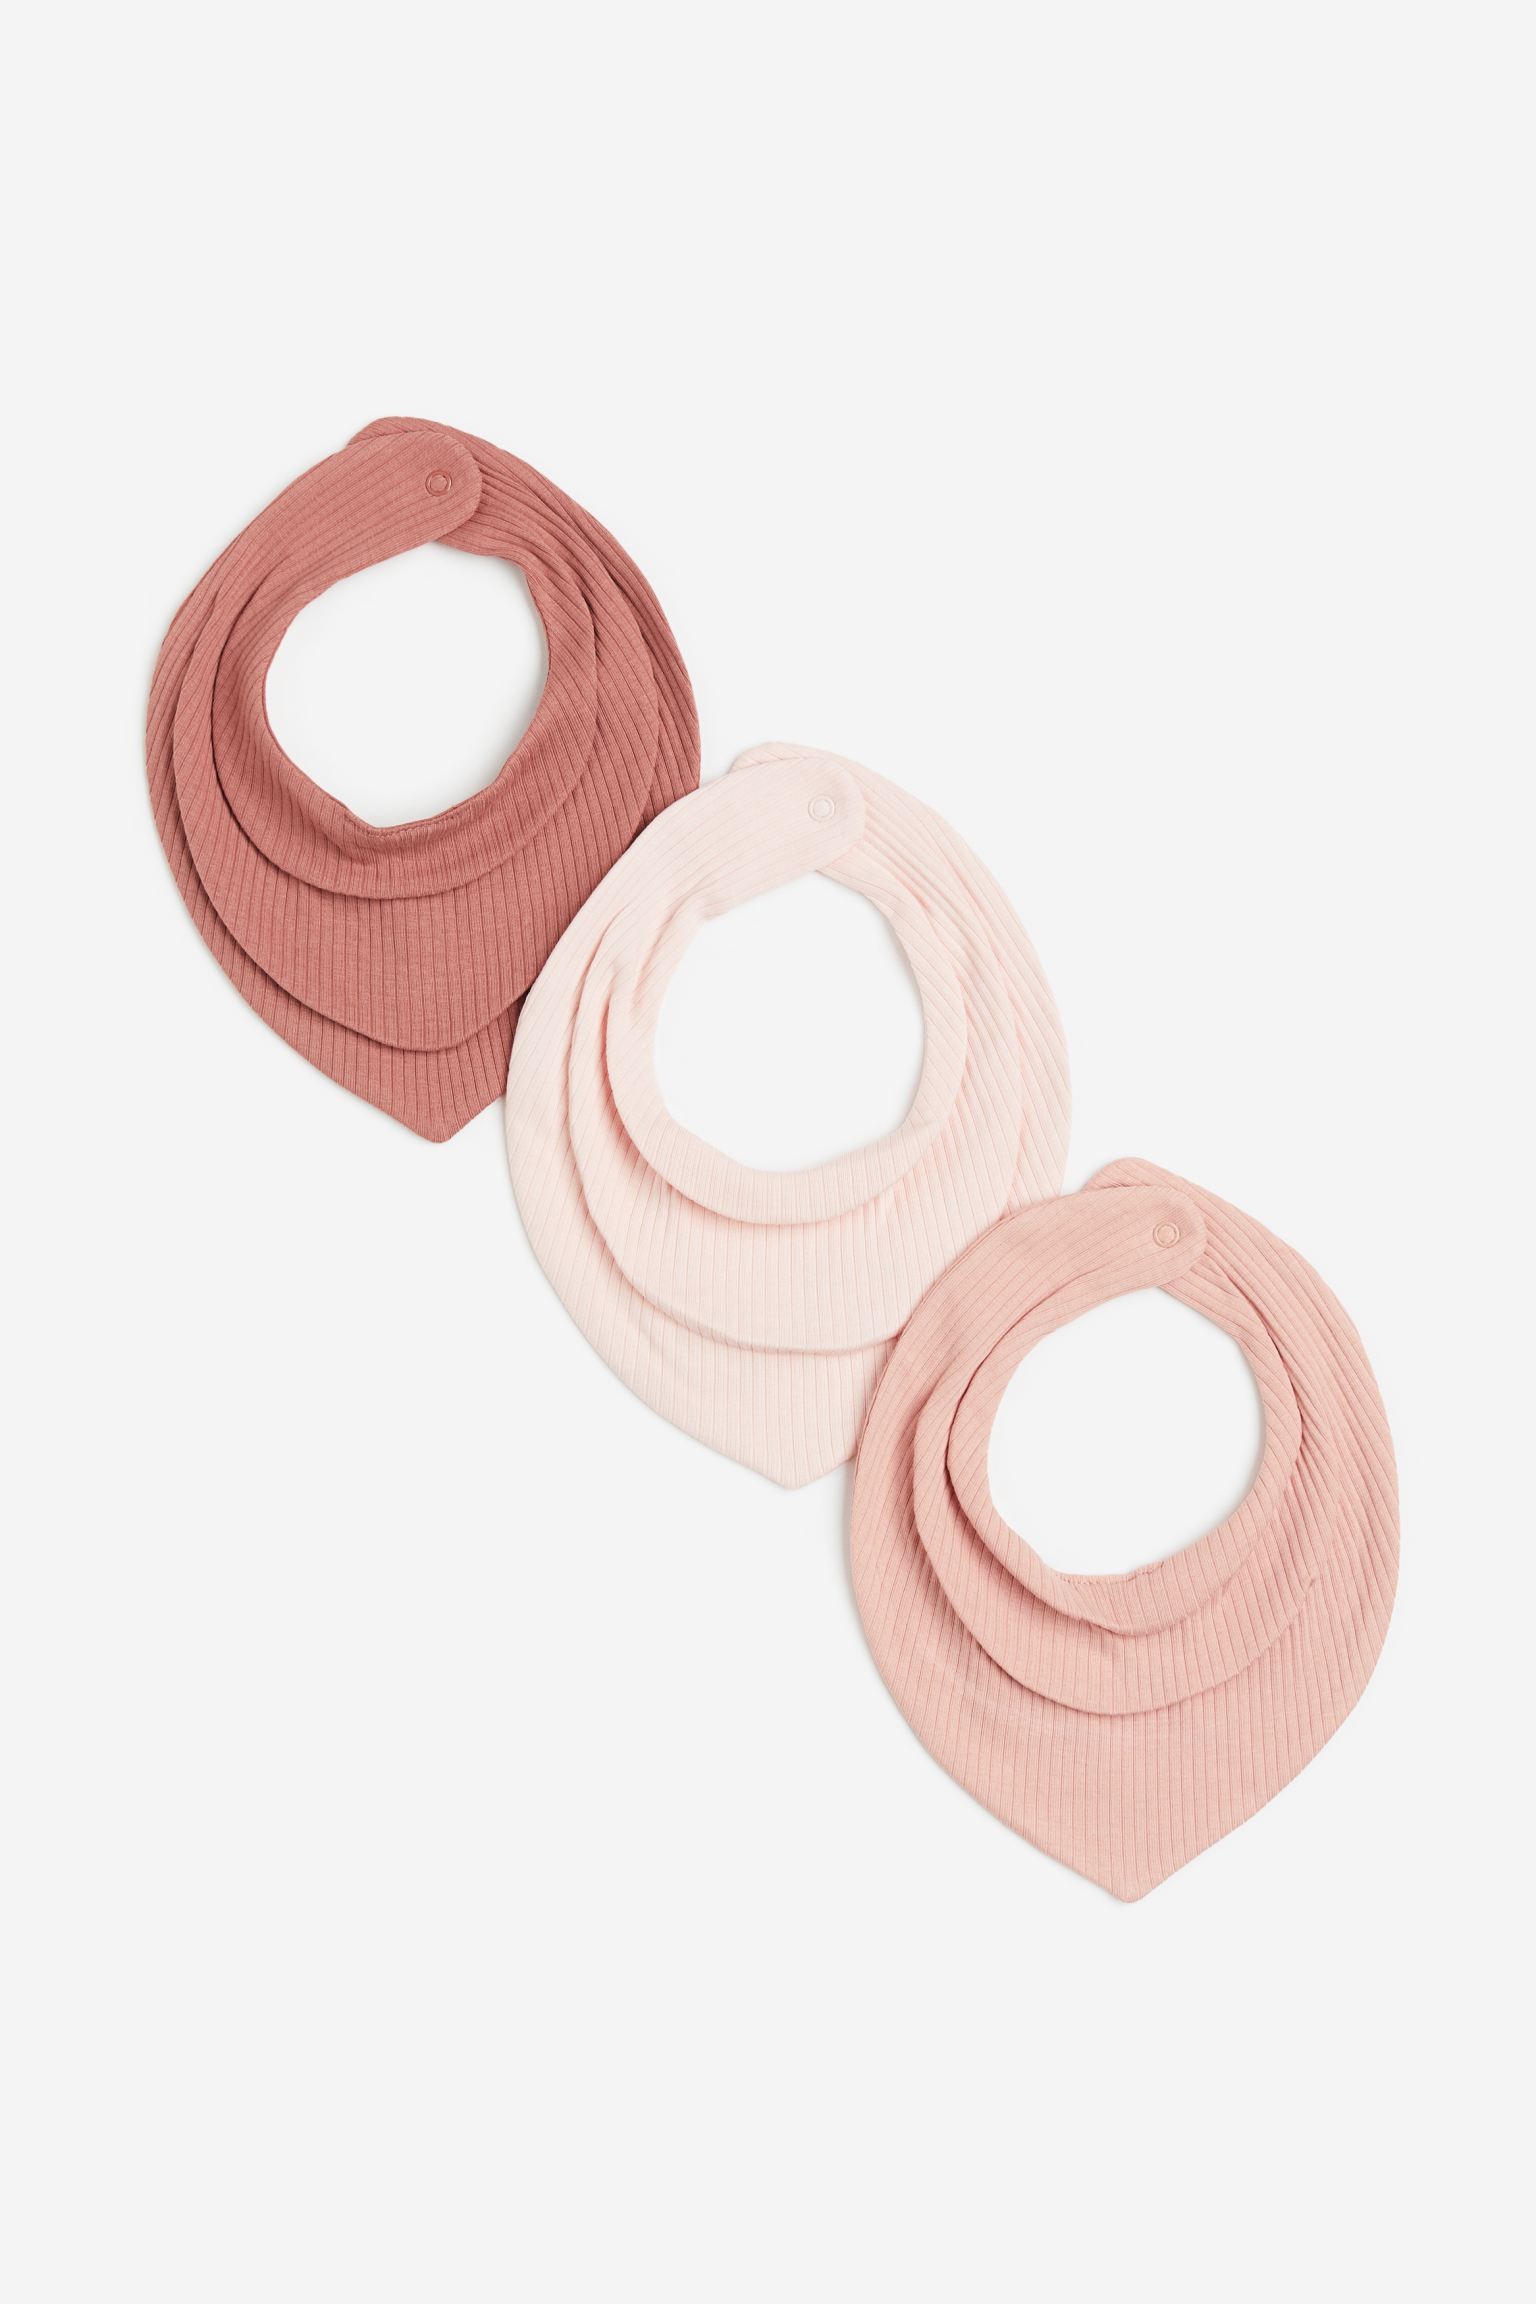 H&M Home Трикутний шарф у смужки, 3 шт., Античний рожевий/Світло-рожевий, 19x19 1176690002 1176690002